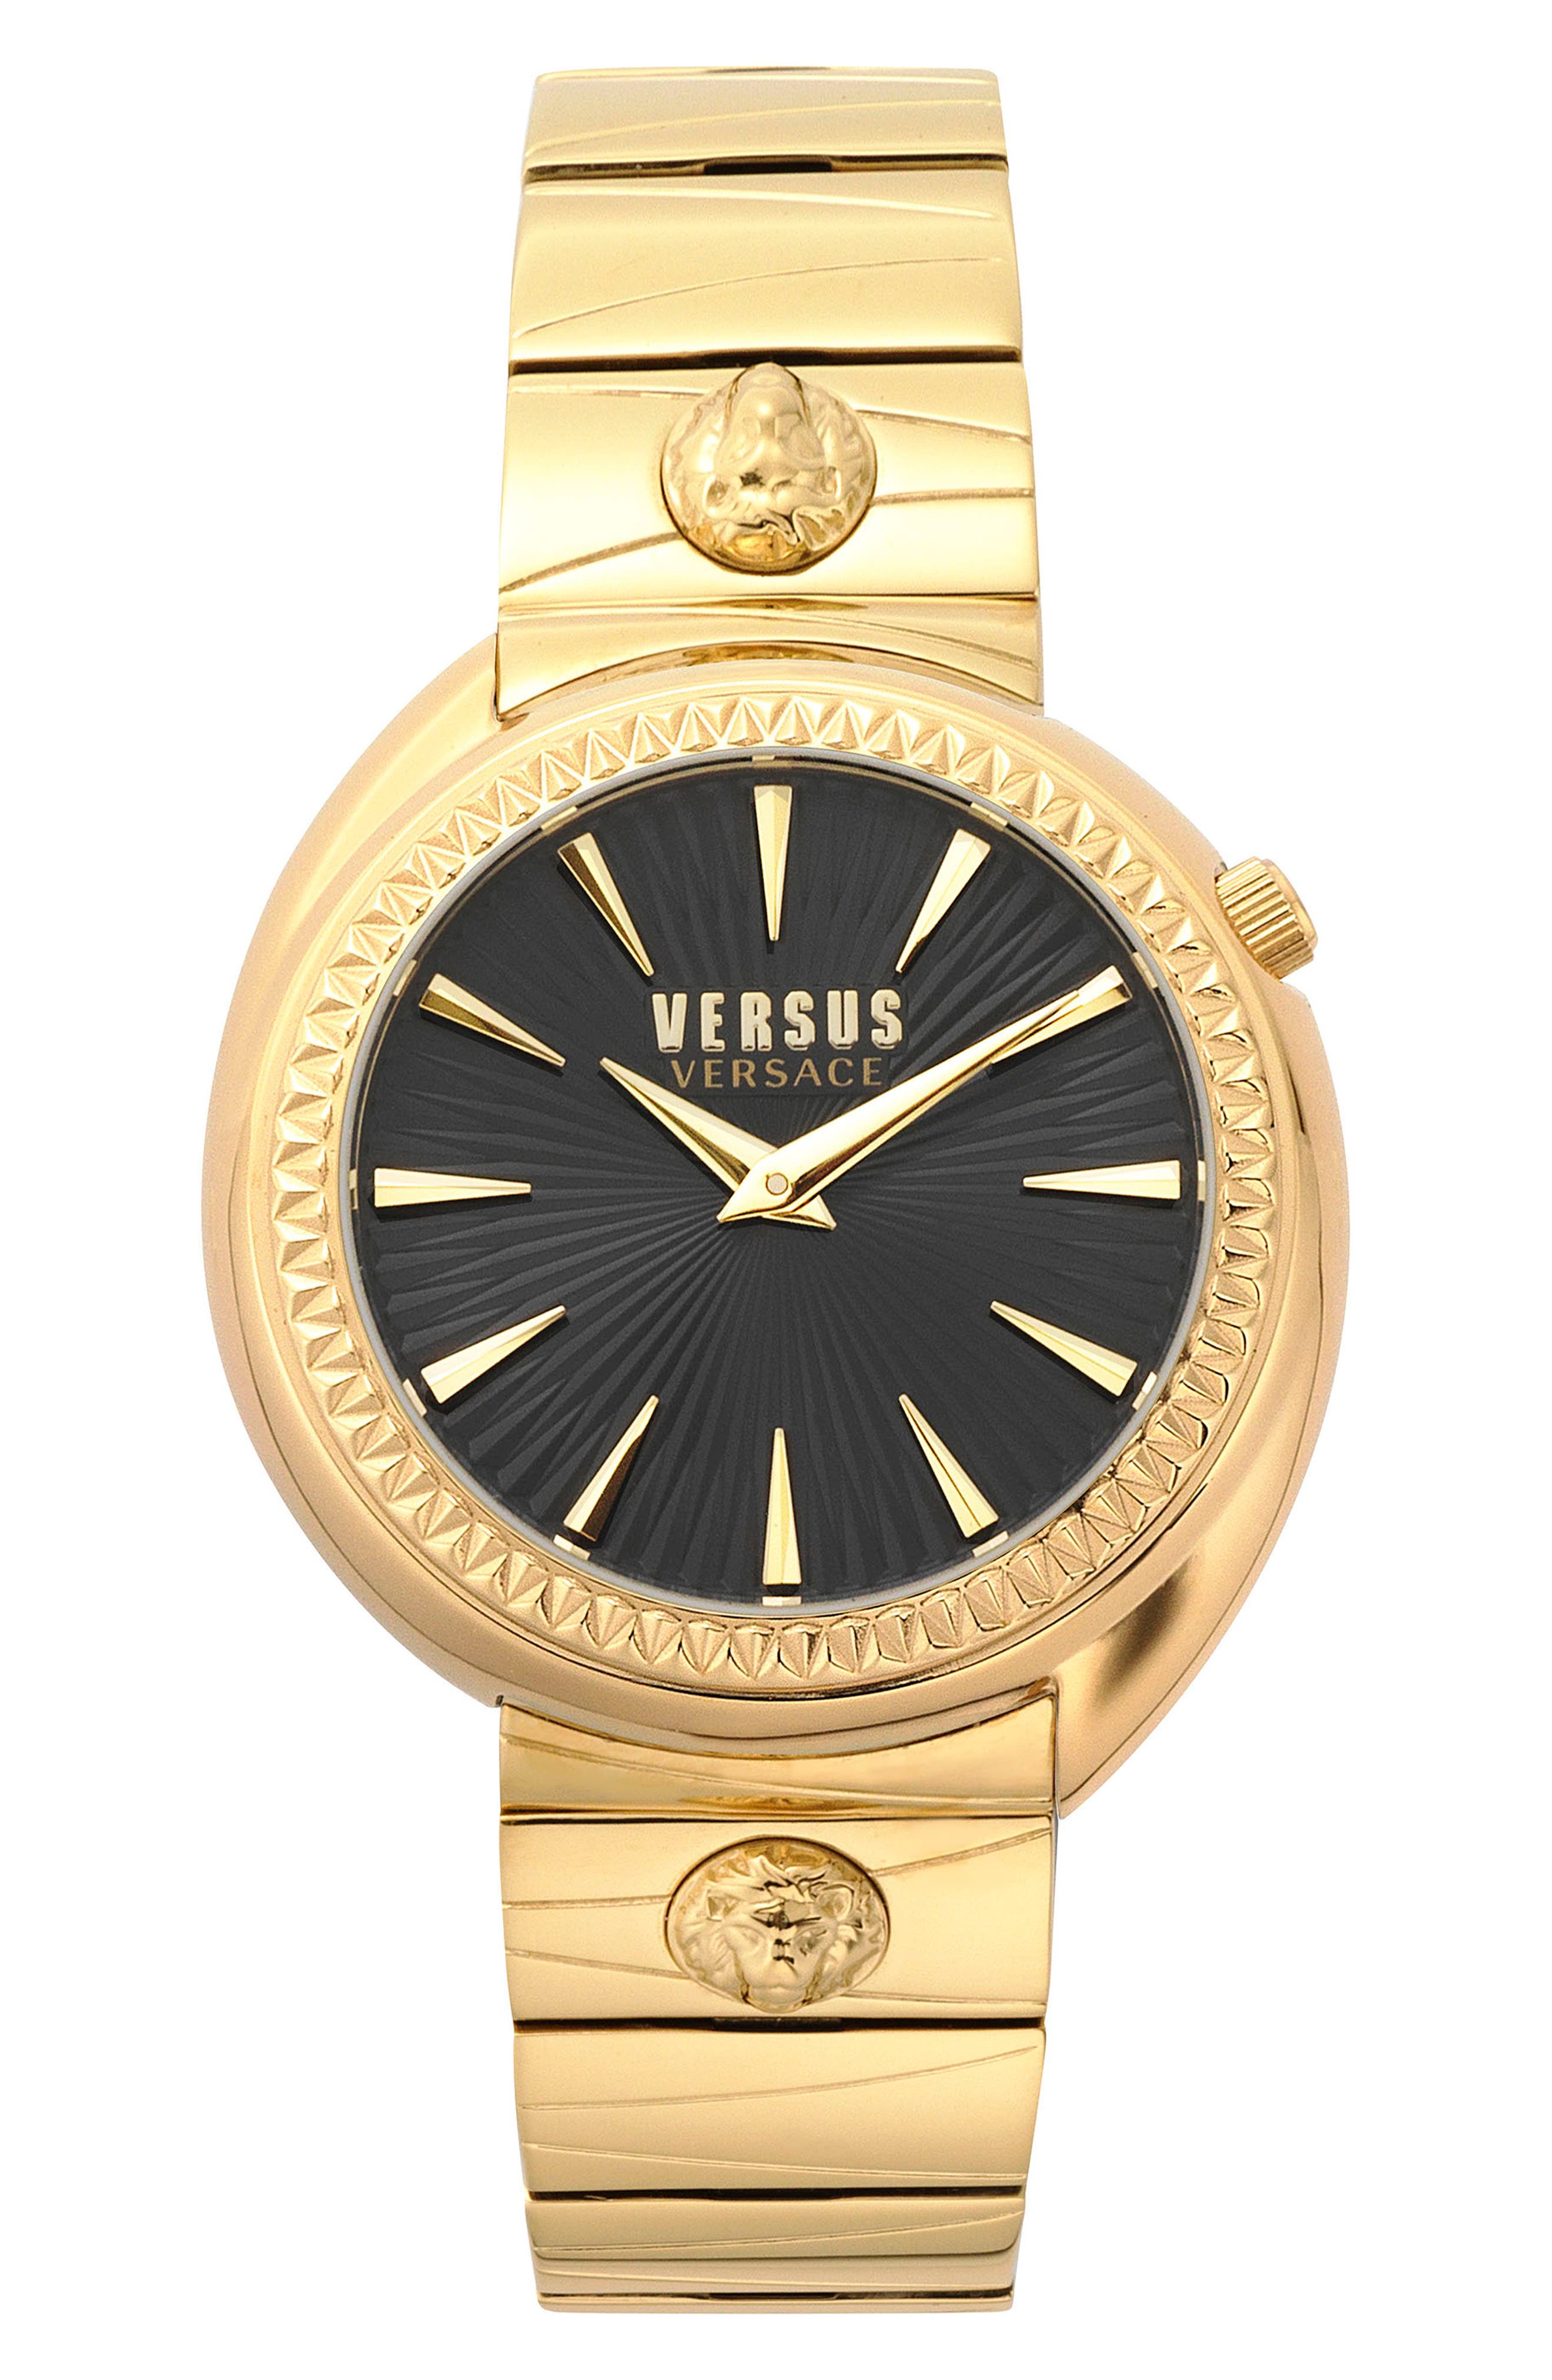 versace versus gold watch